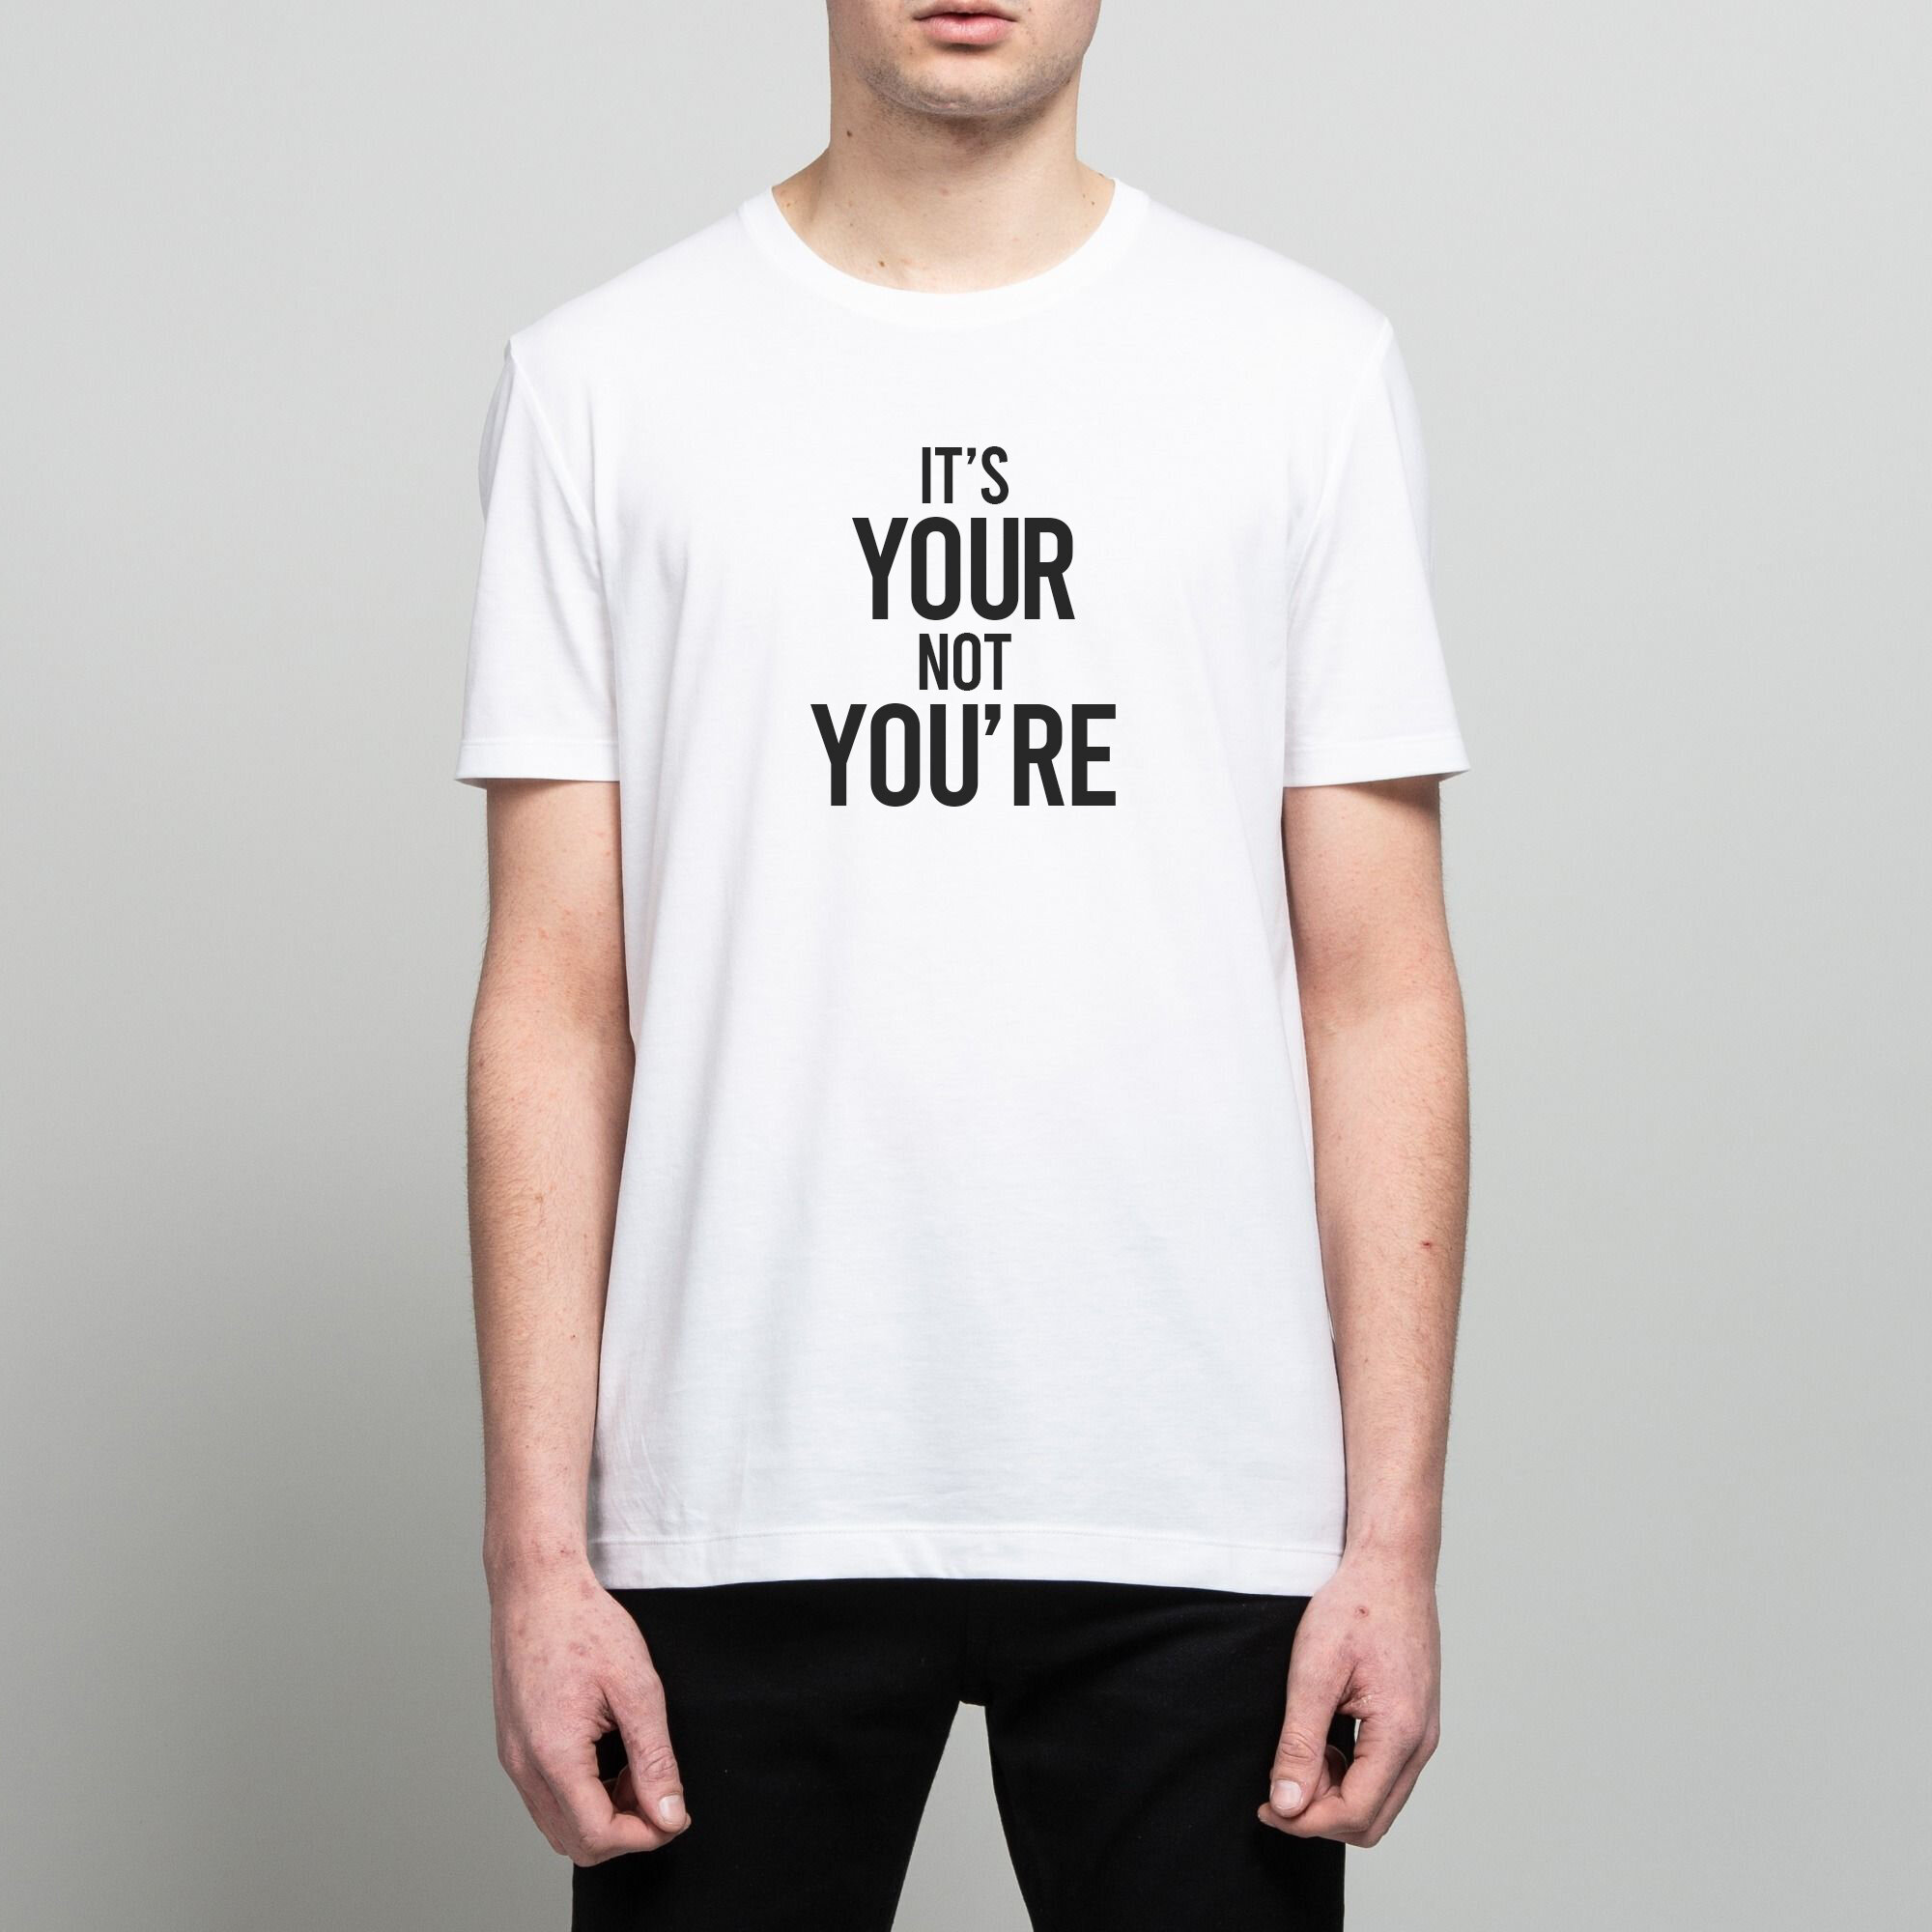 Tshirt-Your.jpg